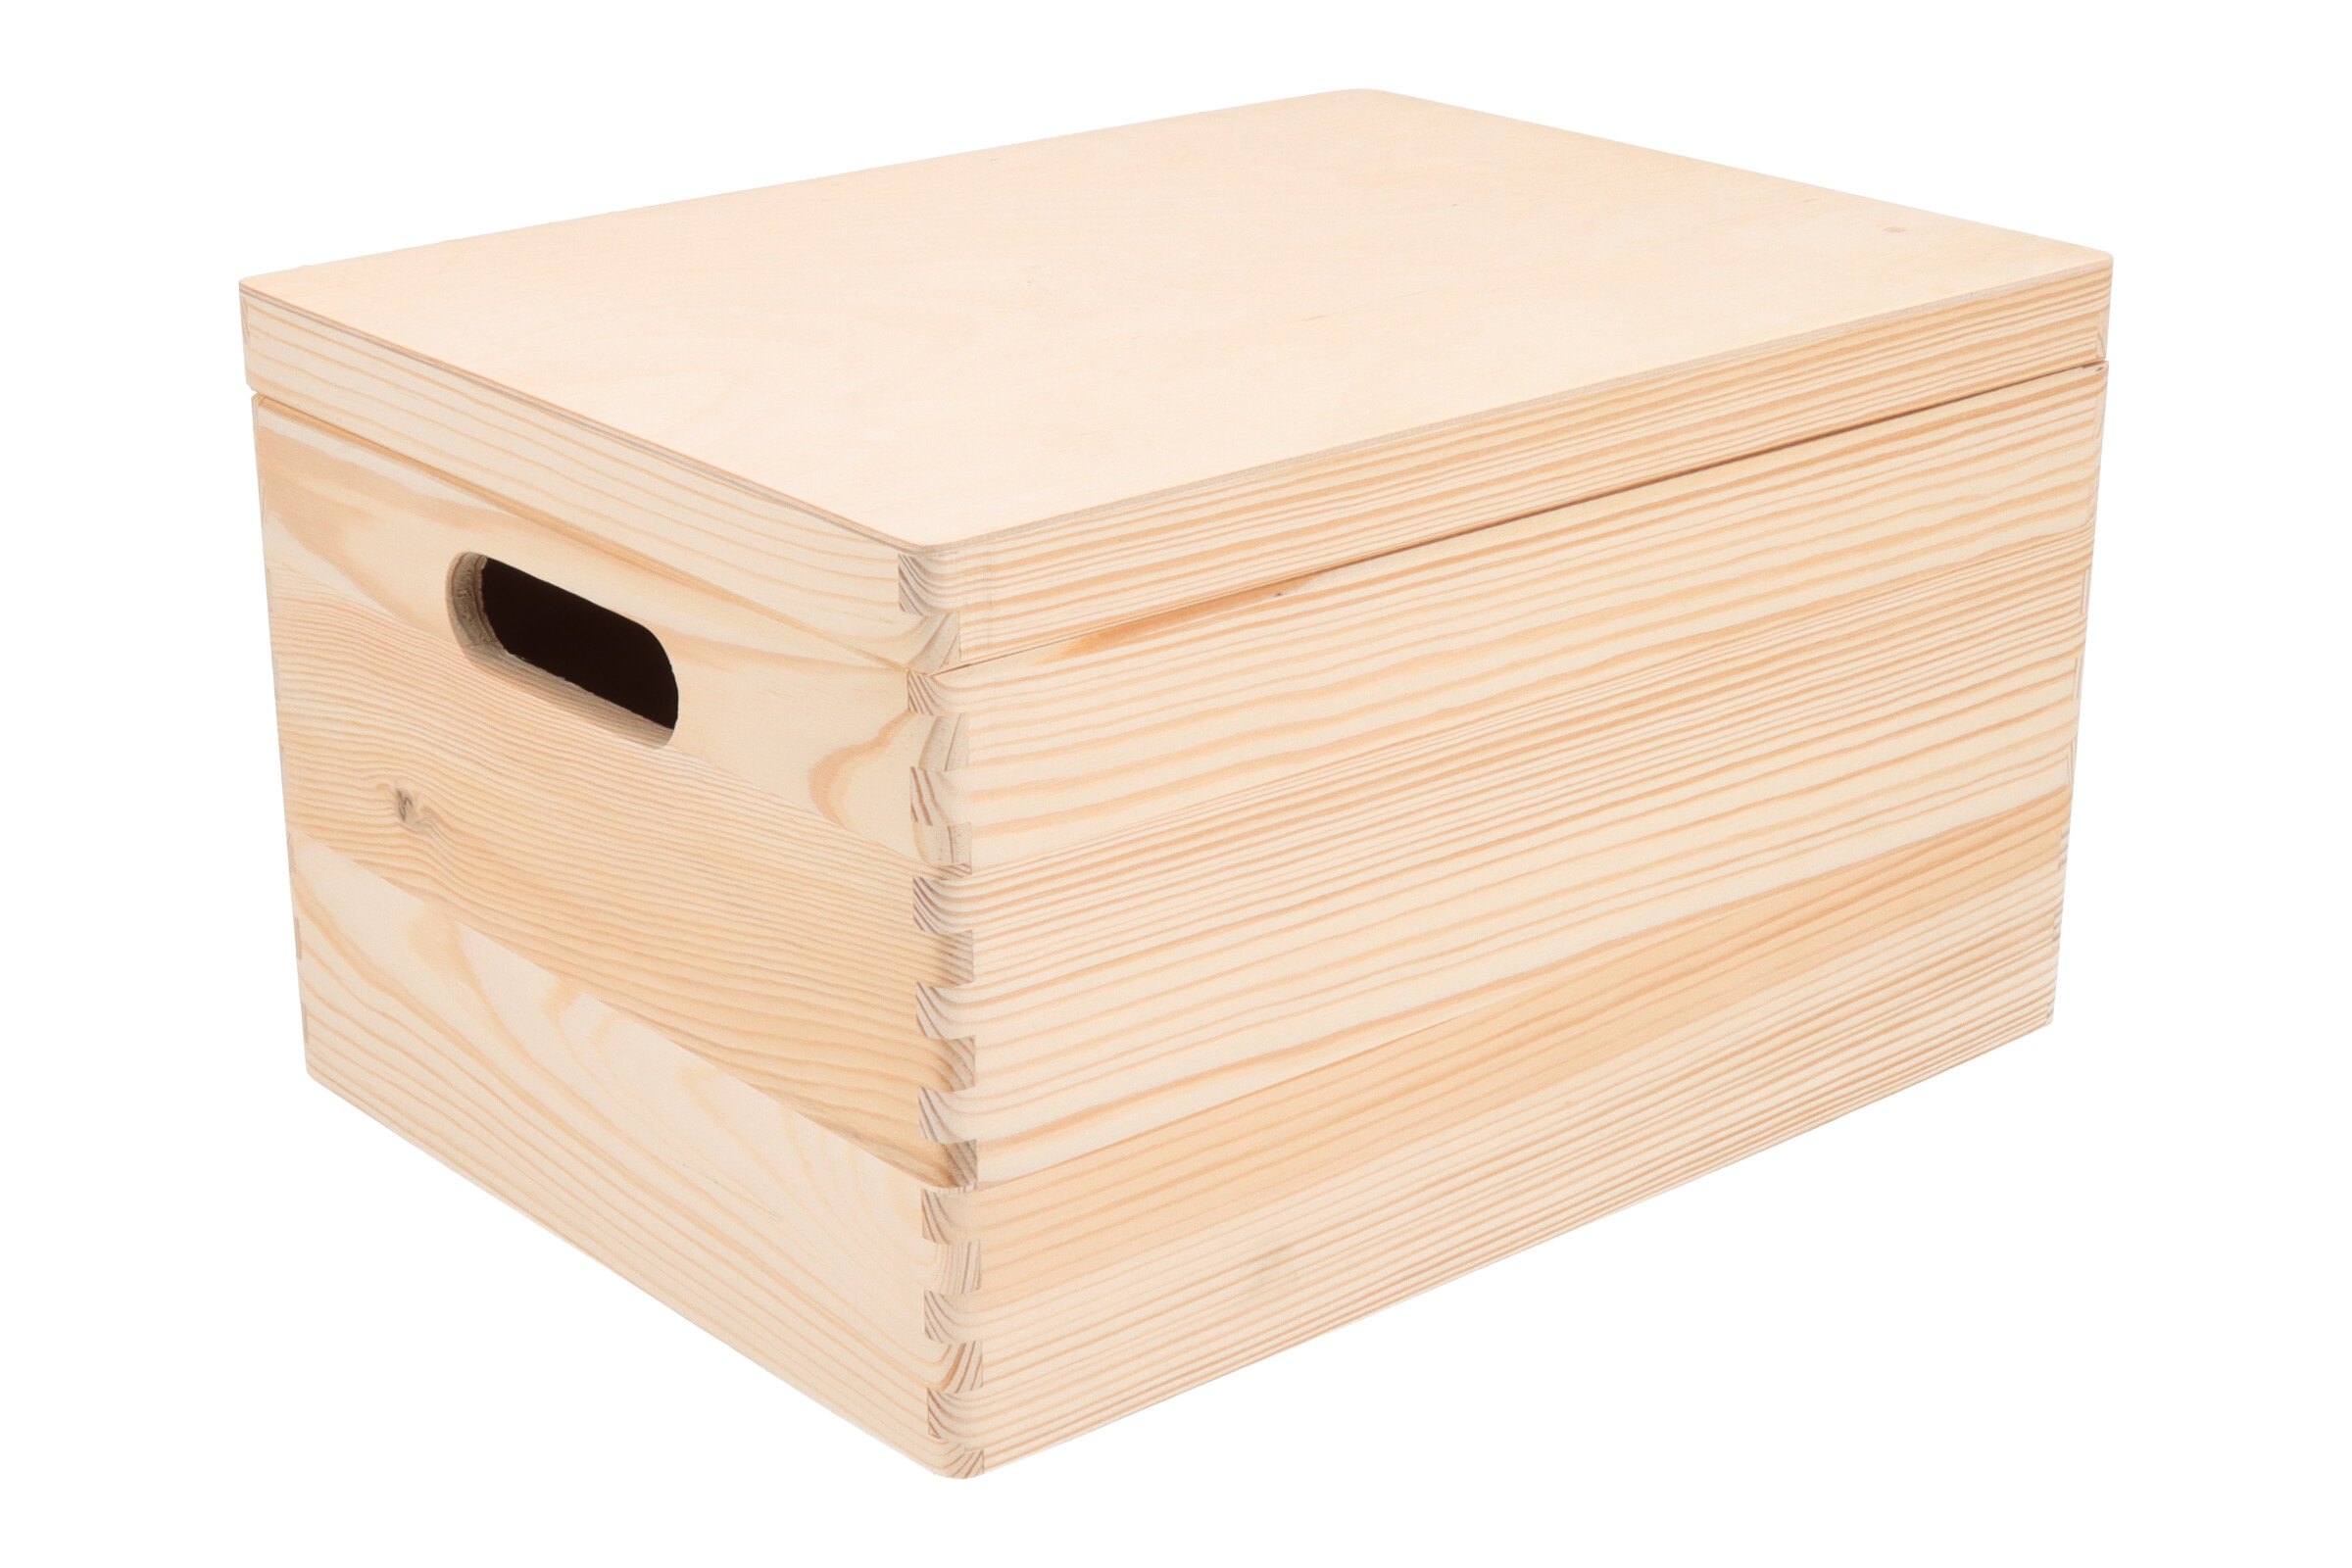 Dřevěný box s víkem 40 x 30 x 23 cm